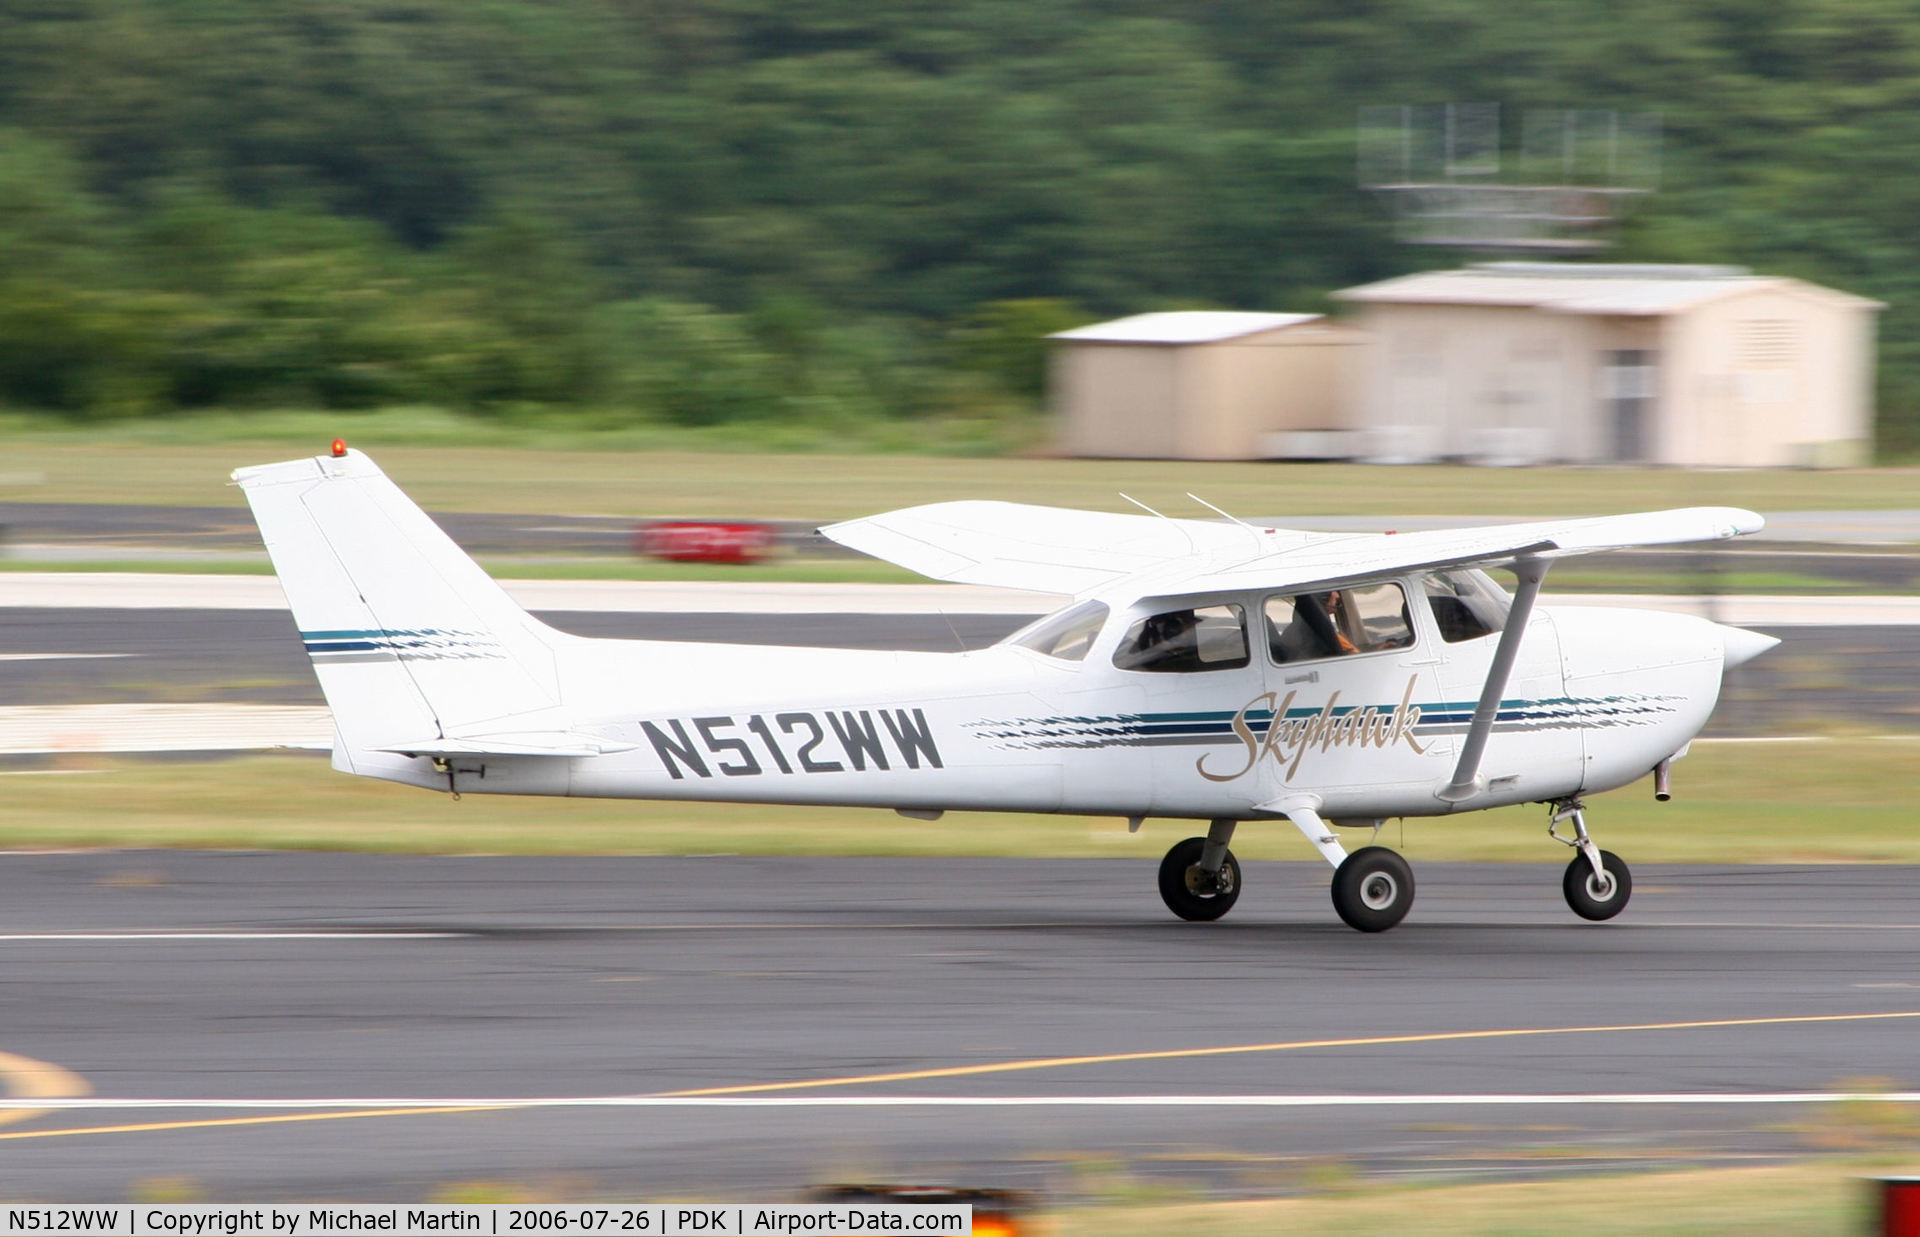 N512WW, 1998 Cessna 172R C/N 17280399, SkyPlane Departing For Daily Traffic Duty